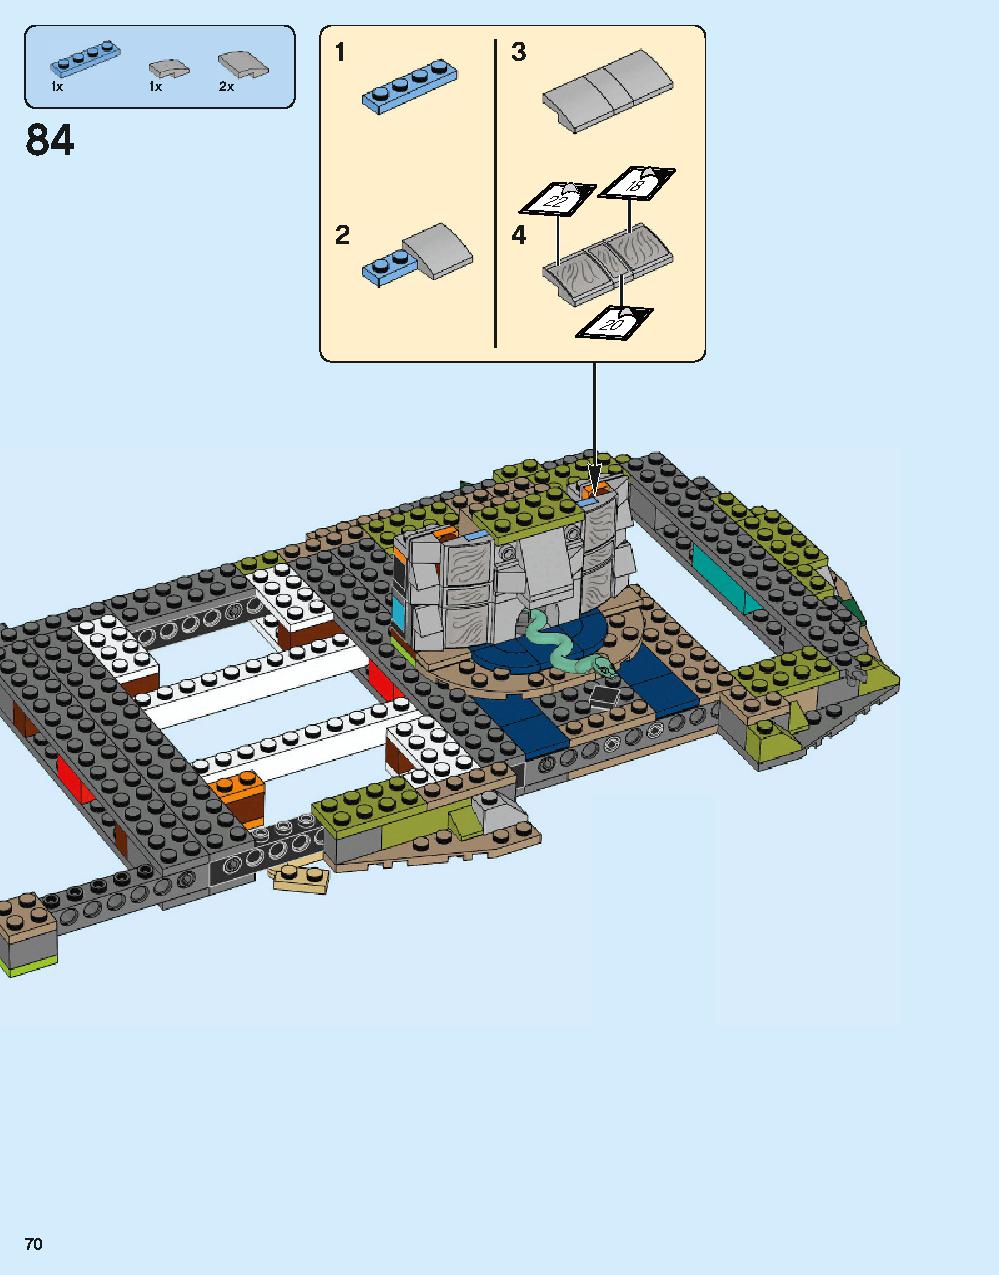 ホグワーツ城 71043 レゴの商品情報 レゴの説明書・組立方法 70 page